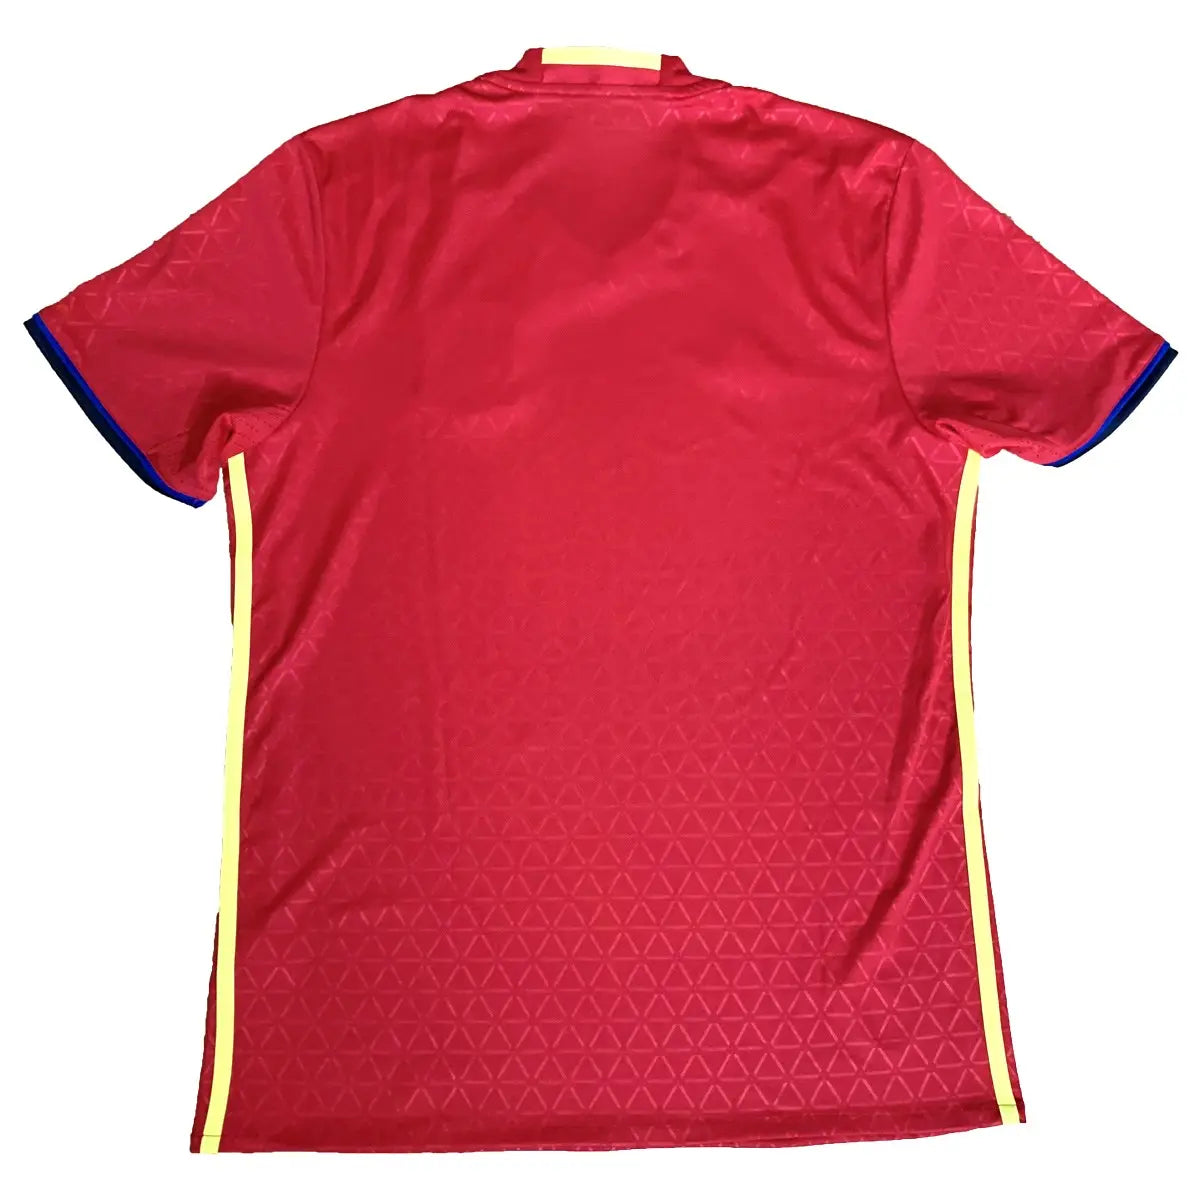 Maillot retro/vintage authentique domicile rouge de l'espagne, avec l"équipementier adidas, porté lors de l'euro 2016 de dos